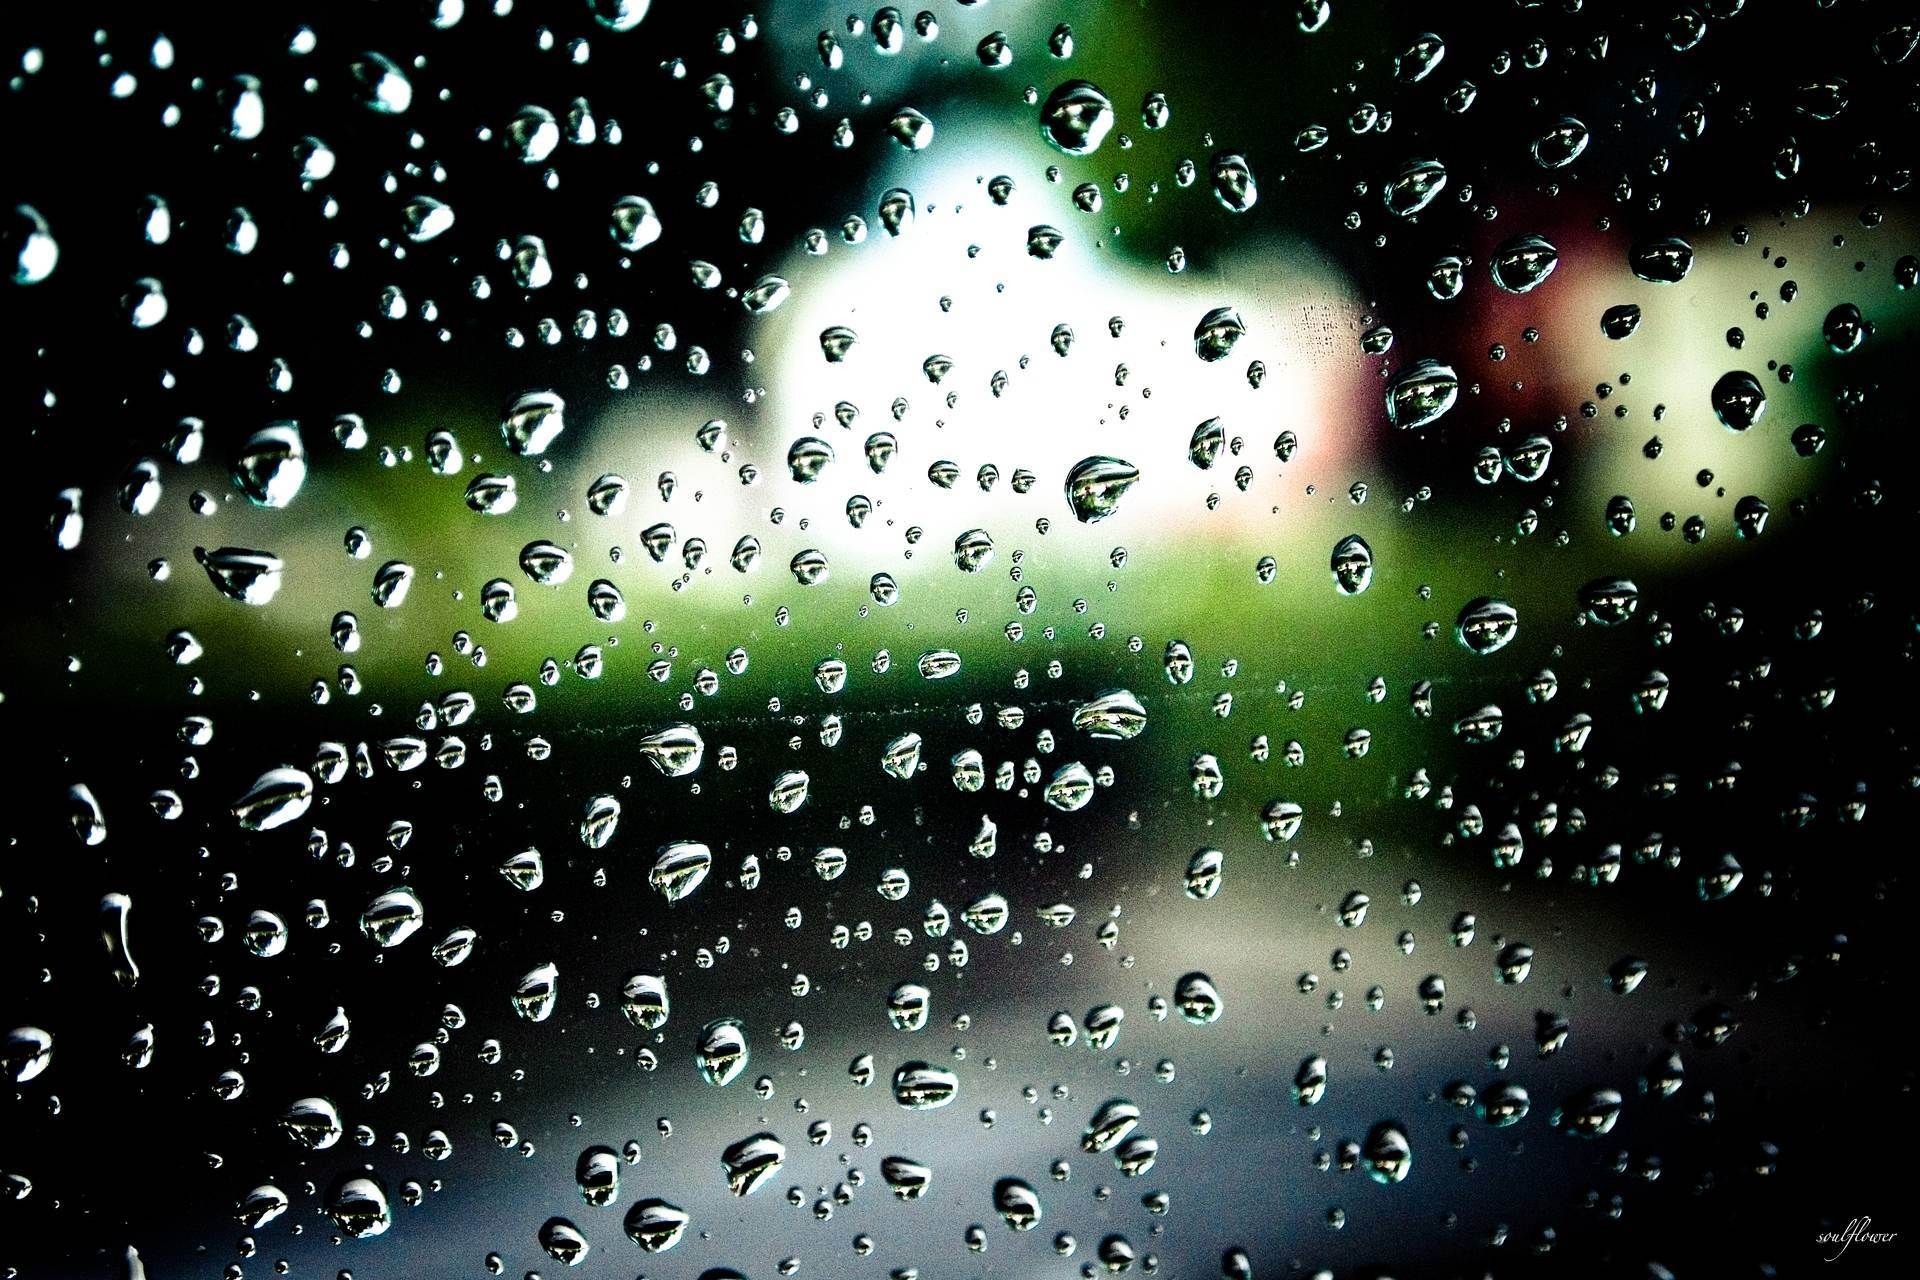 1920x1280, Awesome Beautiful Rain Drop Wallpapers Te - Beautiful Wallpaper Rain Drops - HD Wallpaper 